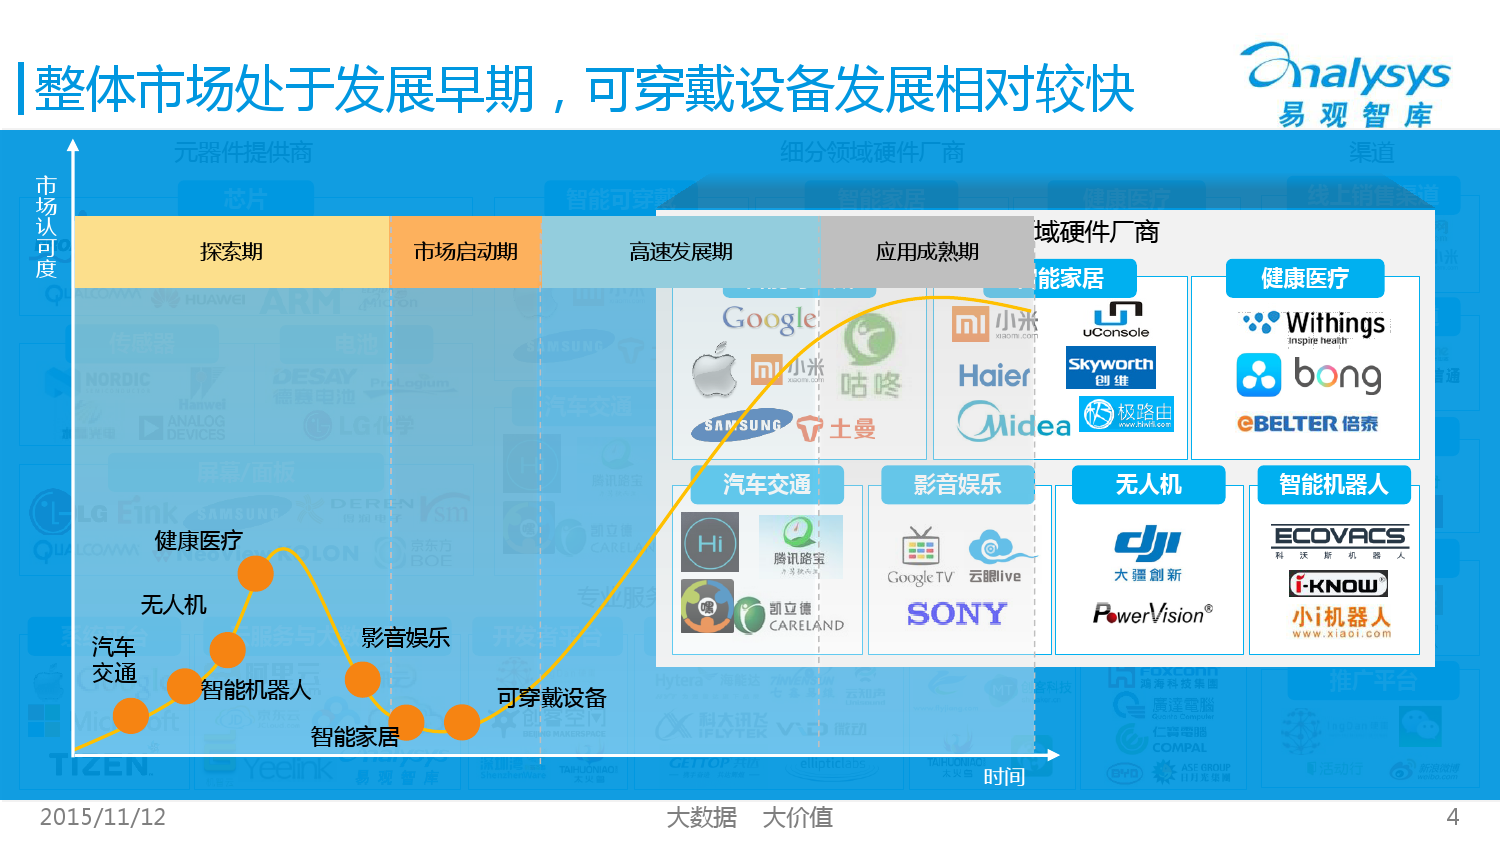 中国智能硬件产业生态图谱2015 01_000004